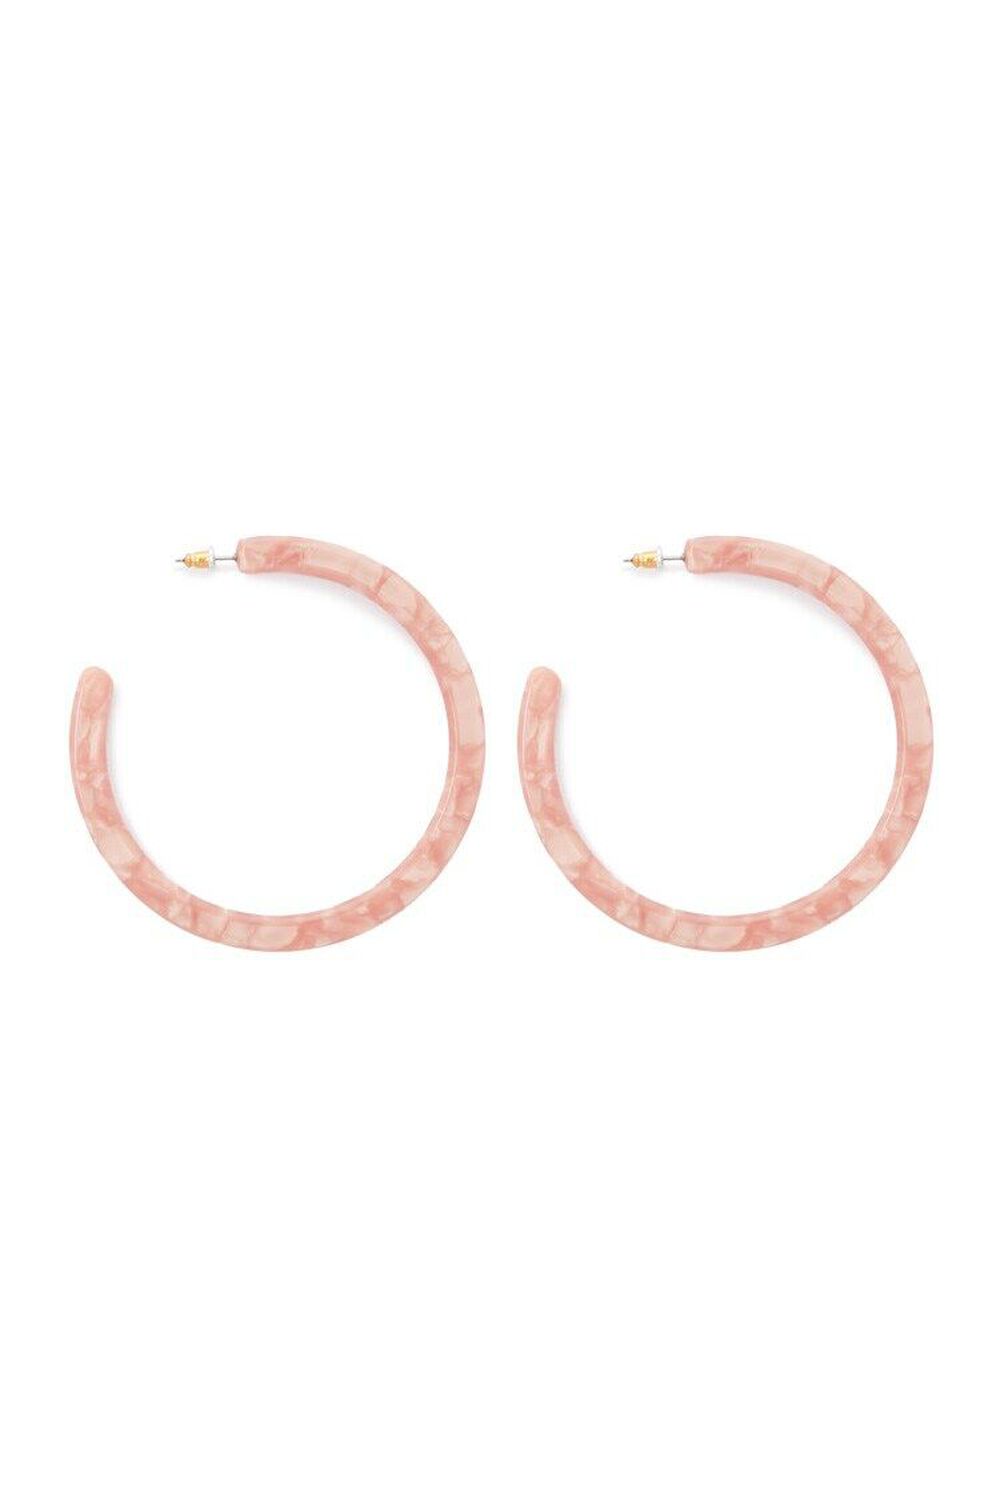 Marble Hoop Earrings, image 1